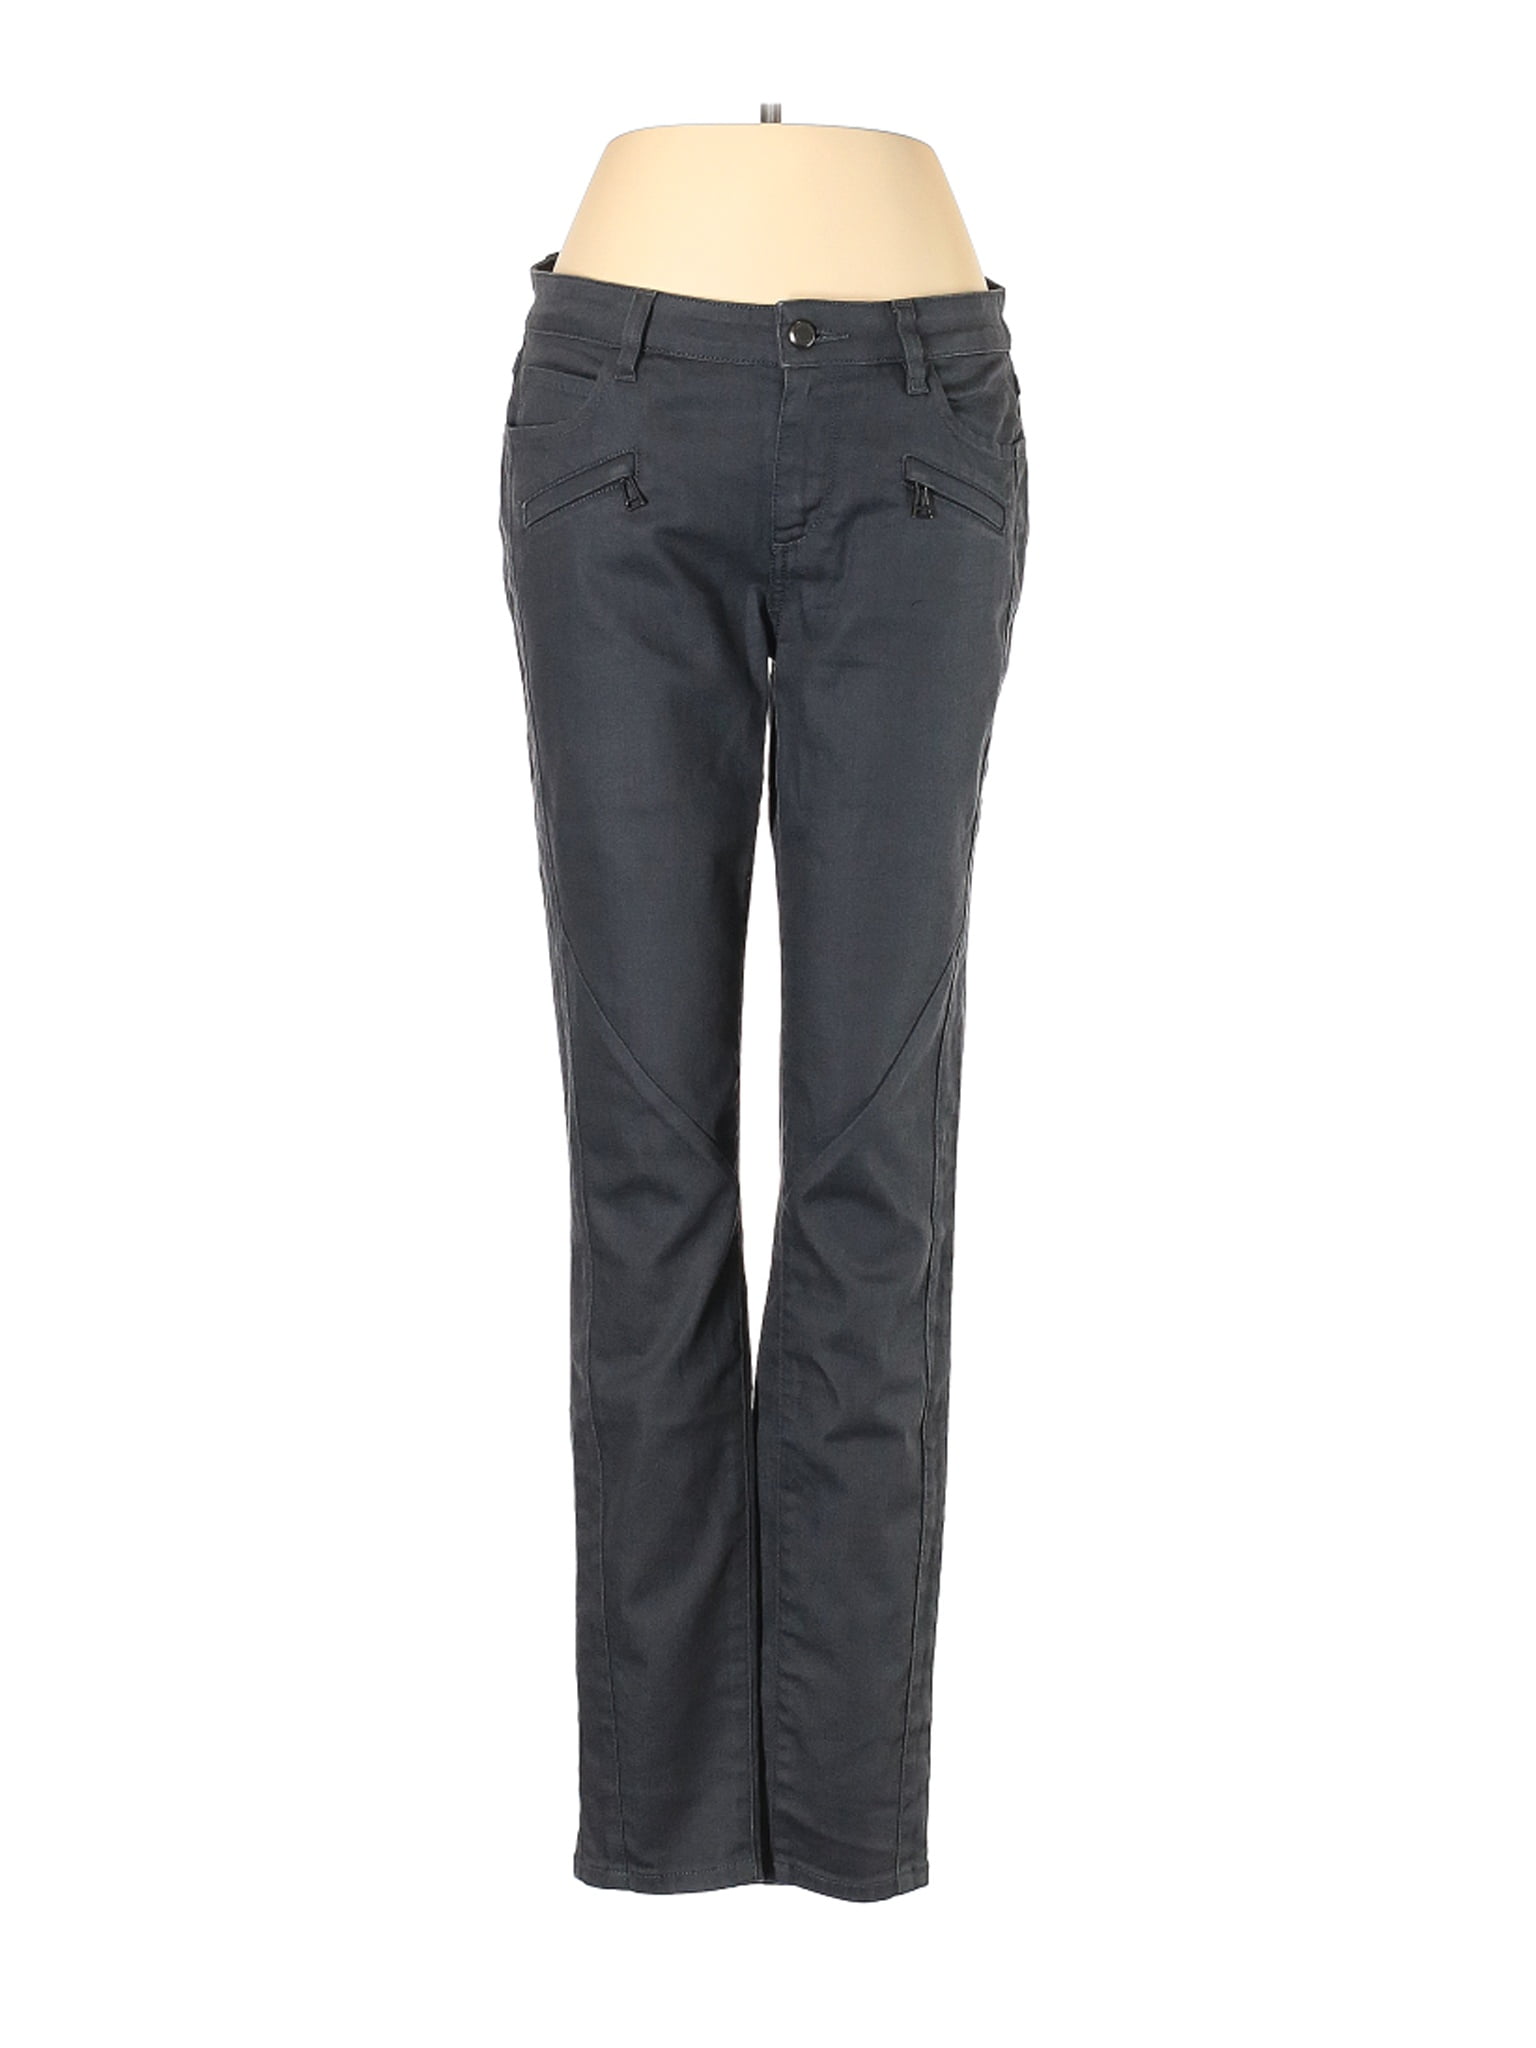 Belstaff - Pre-Owned Belstaff Women's Size 29W Jeans - Walmart.com ...